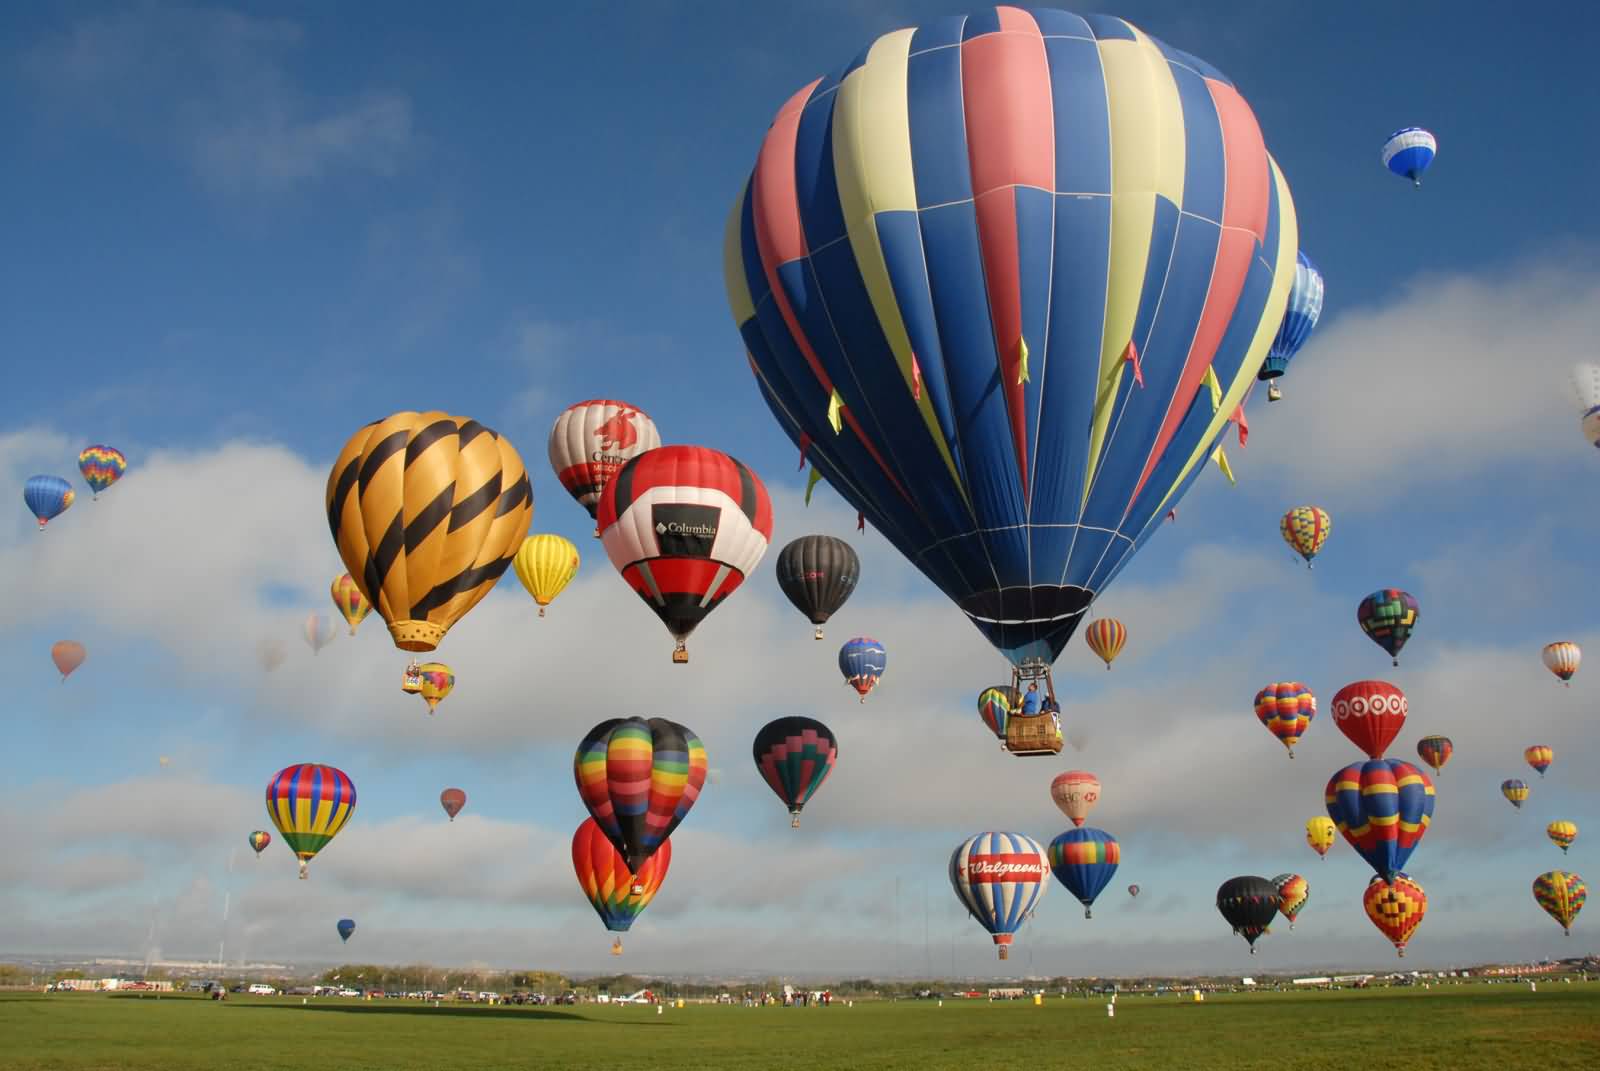 Hot Air Balloons Rides At The Albuquerque Balloon Festival